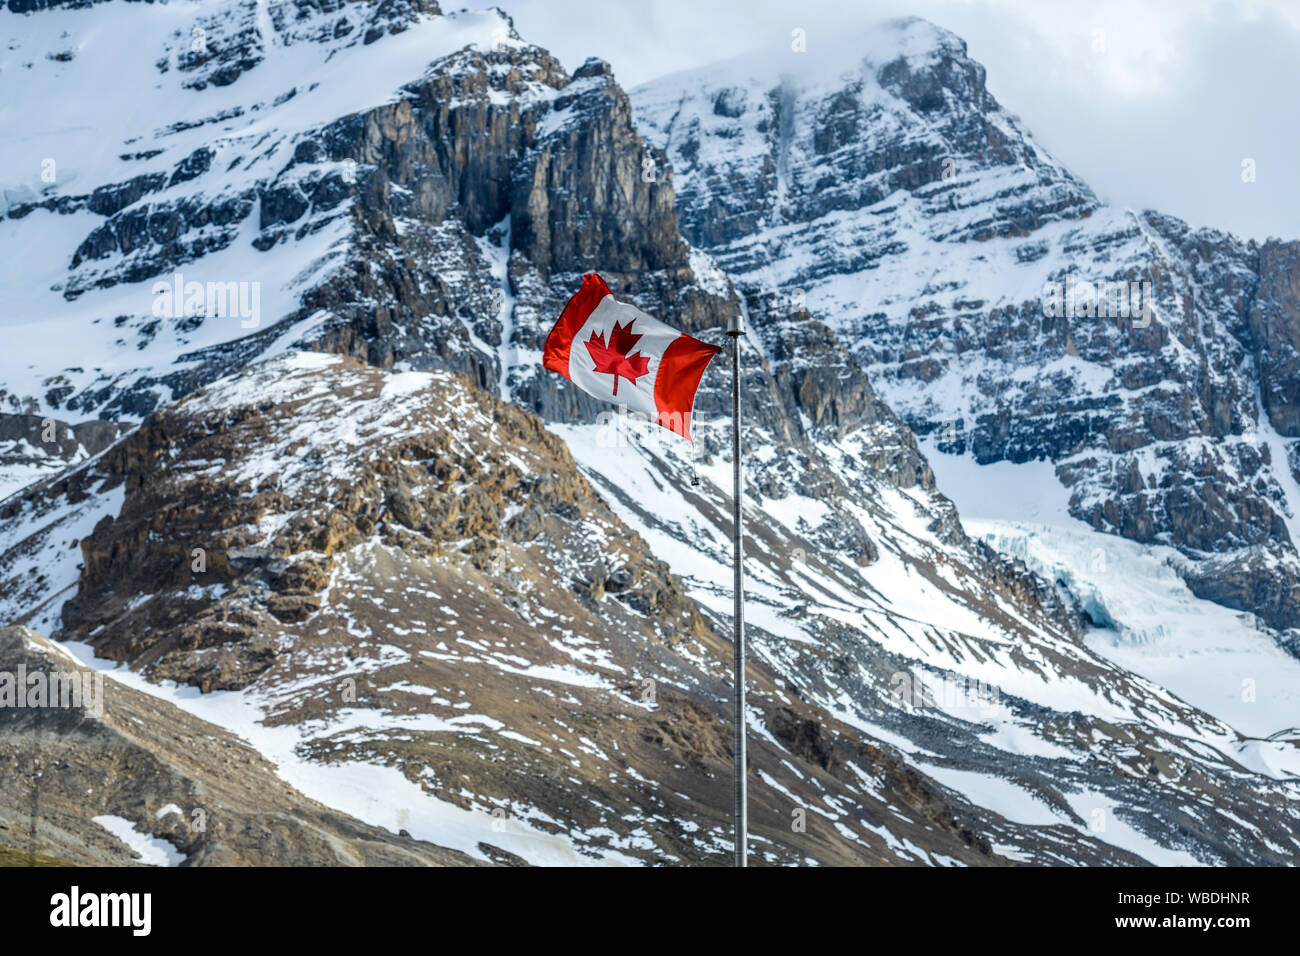 Flagge an der Vorderseite des Mt. Andromeda - eine kanadische nationale Flagge an der Vorderseite des Schnee-Mt abgedeckt. Andromeda und Mt. Athabasca, Jasper National Park. Stockfoto